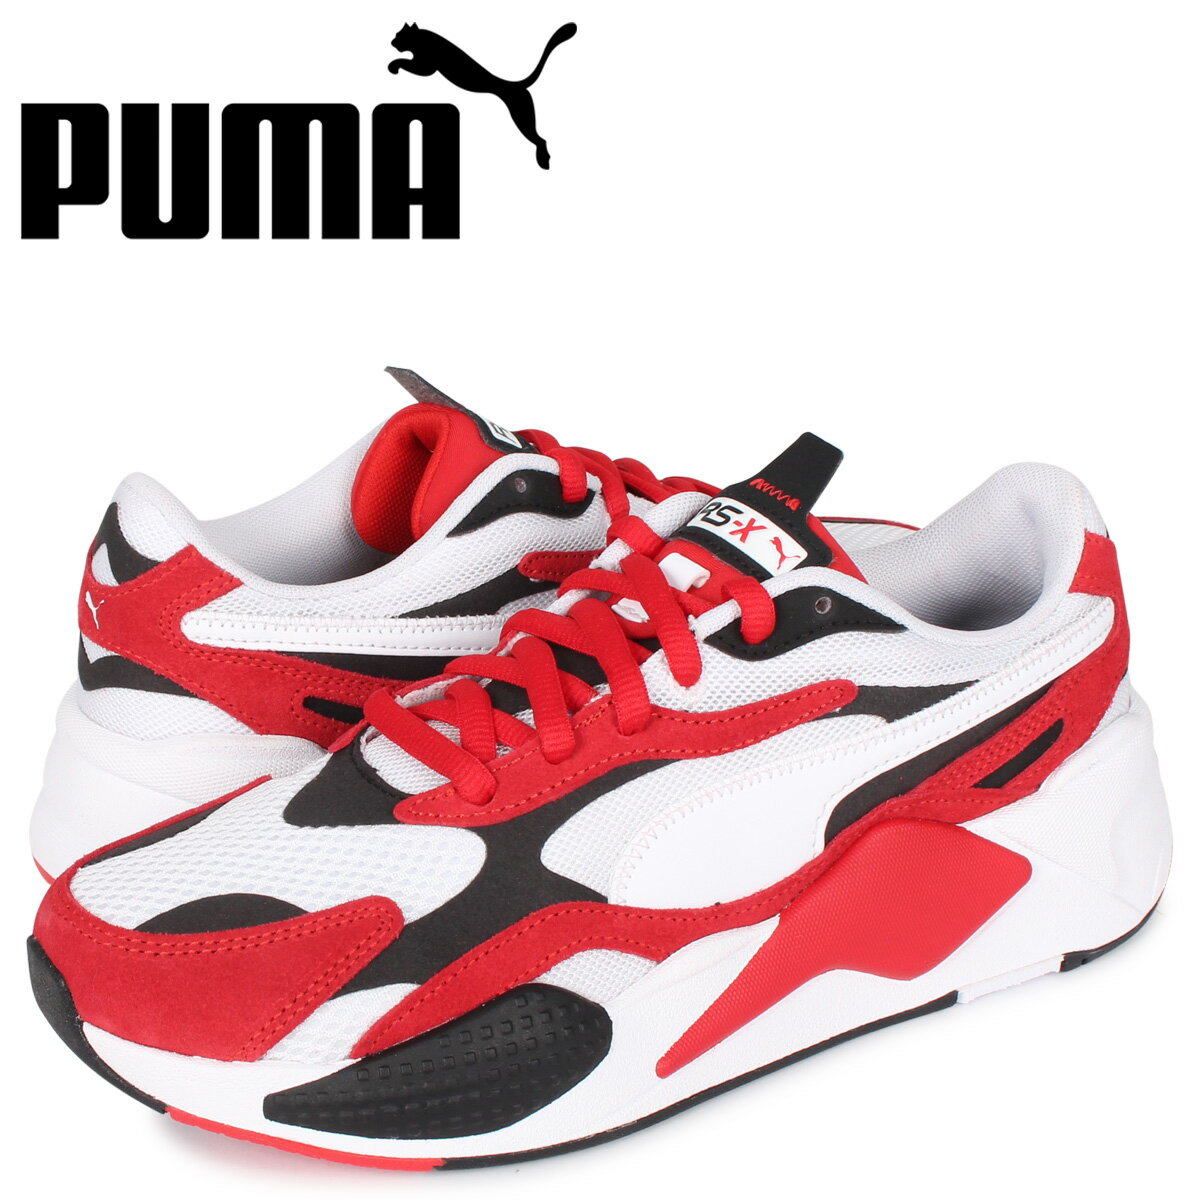 PUMA プーマ スーパー スニーカー メンズ RS-X3 SUPER レッド 372884-01